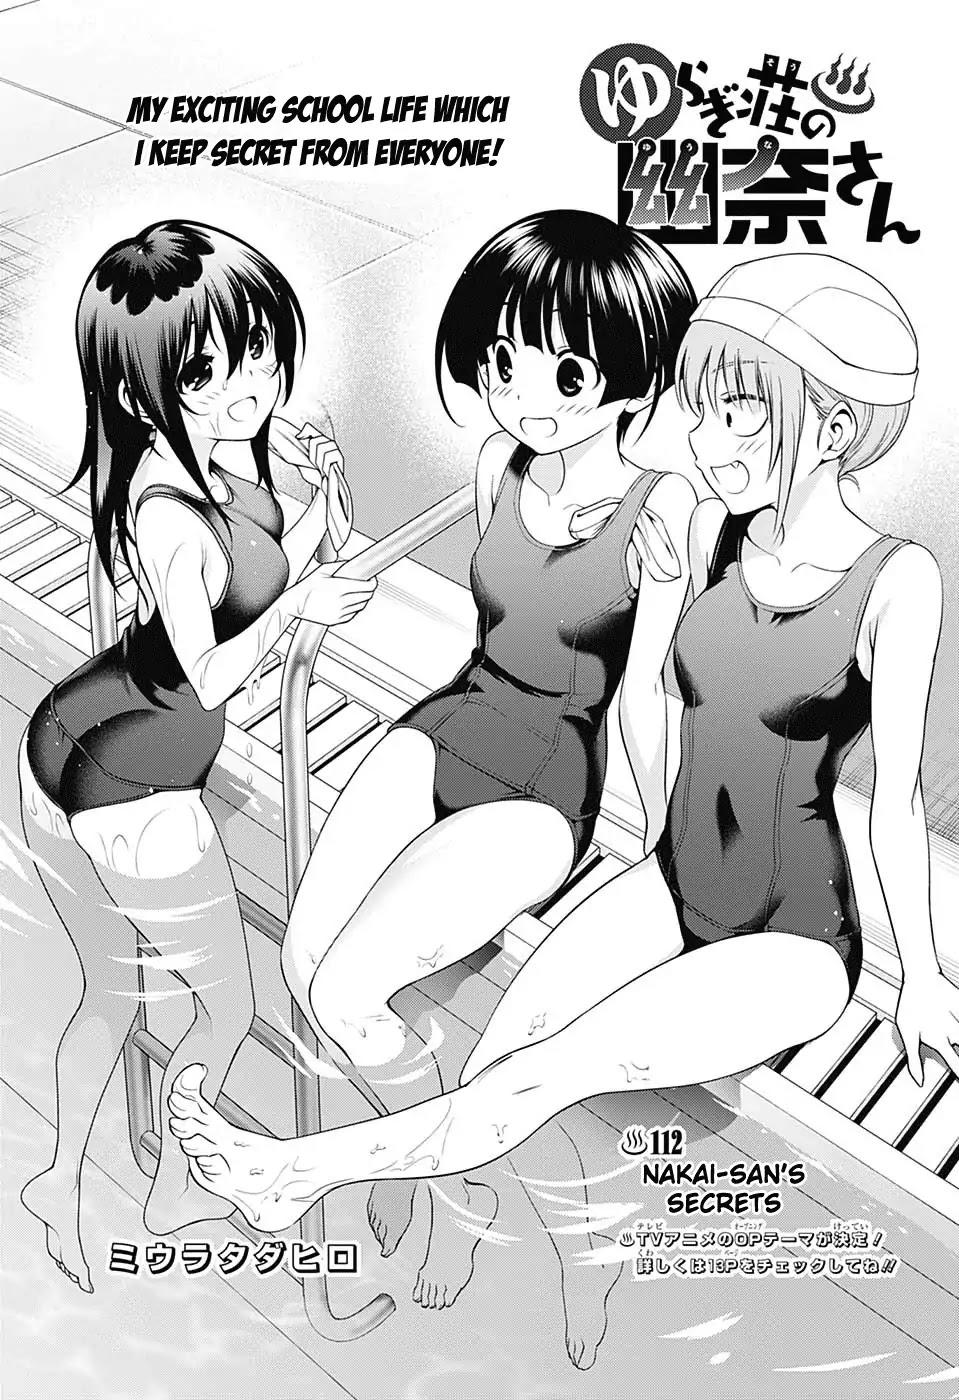 Read Yuragi-Sou No Yuuna-San Vol.24 Chapter 209: Yuragi Inn's Yuuna-San on  Mangakakalot